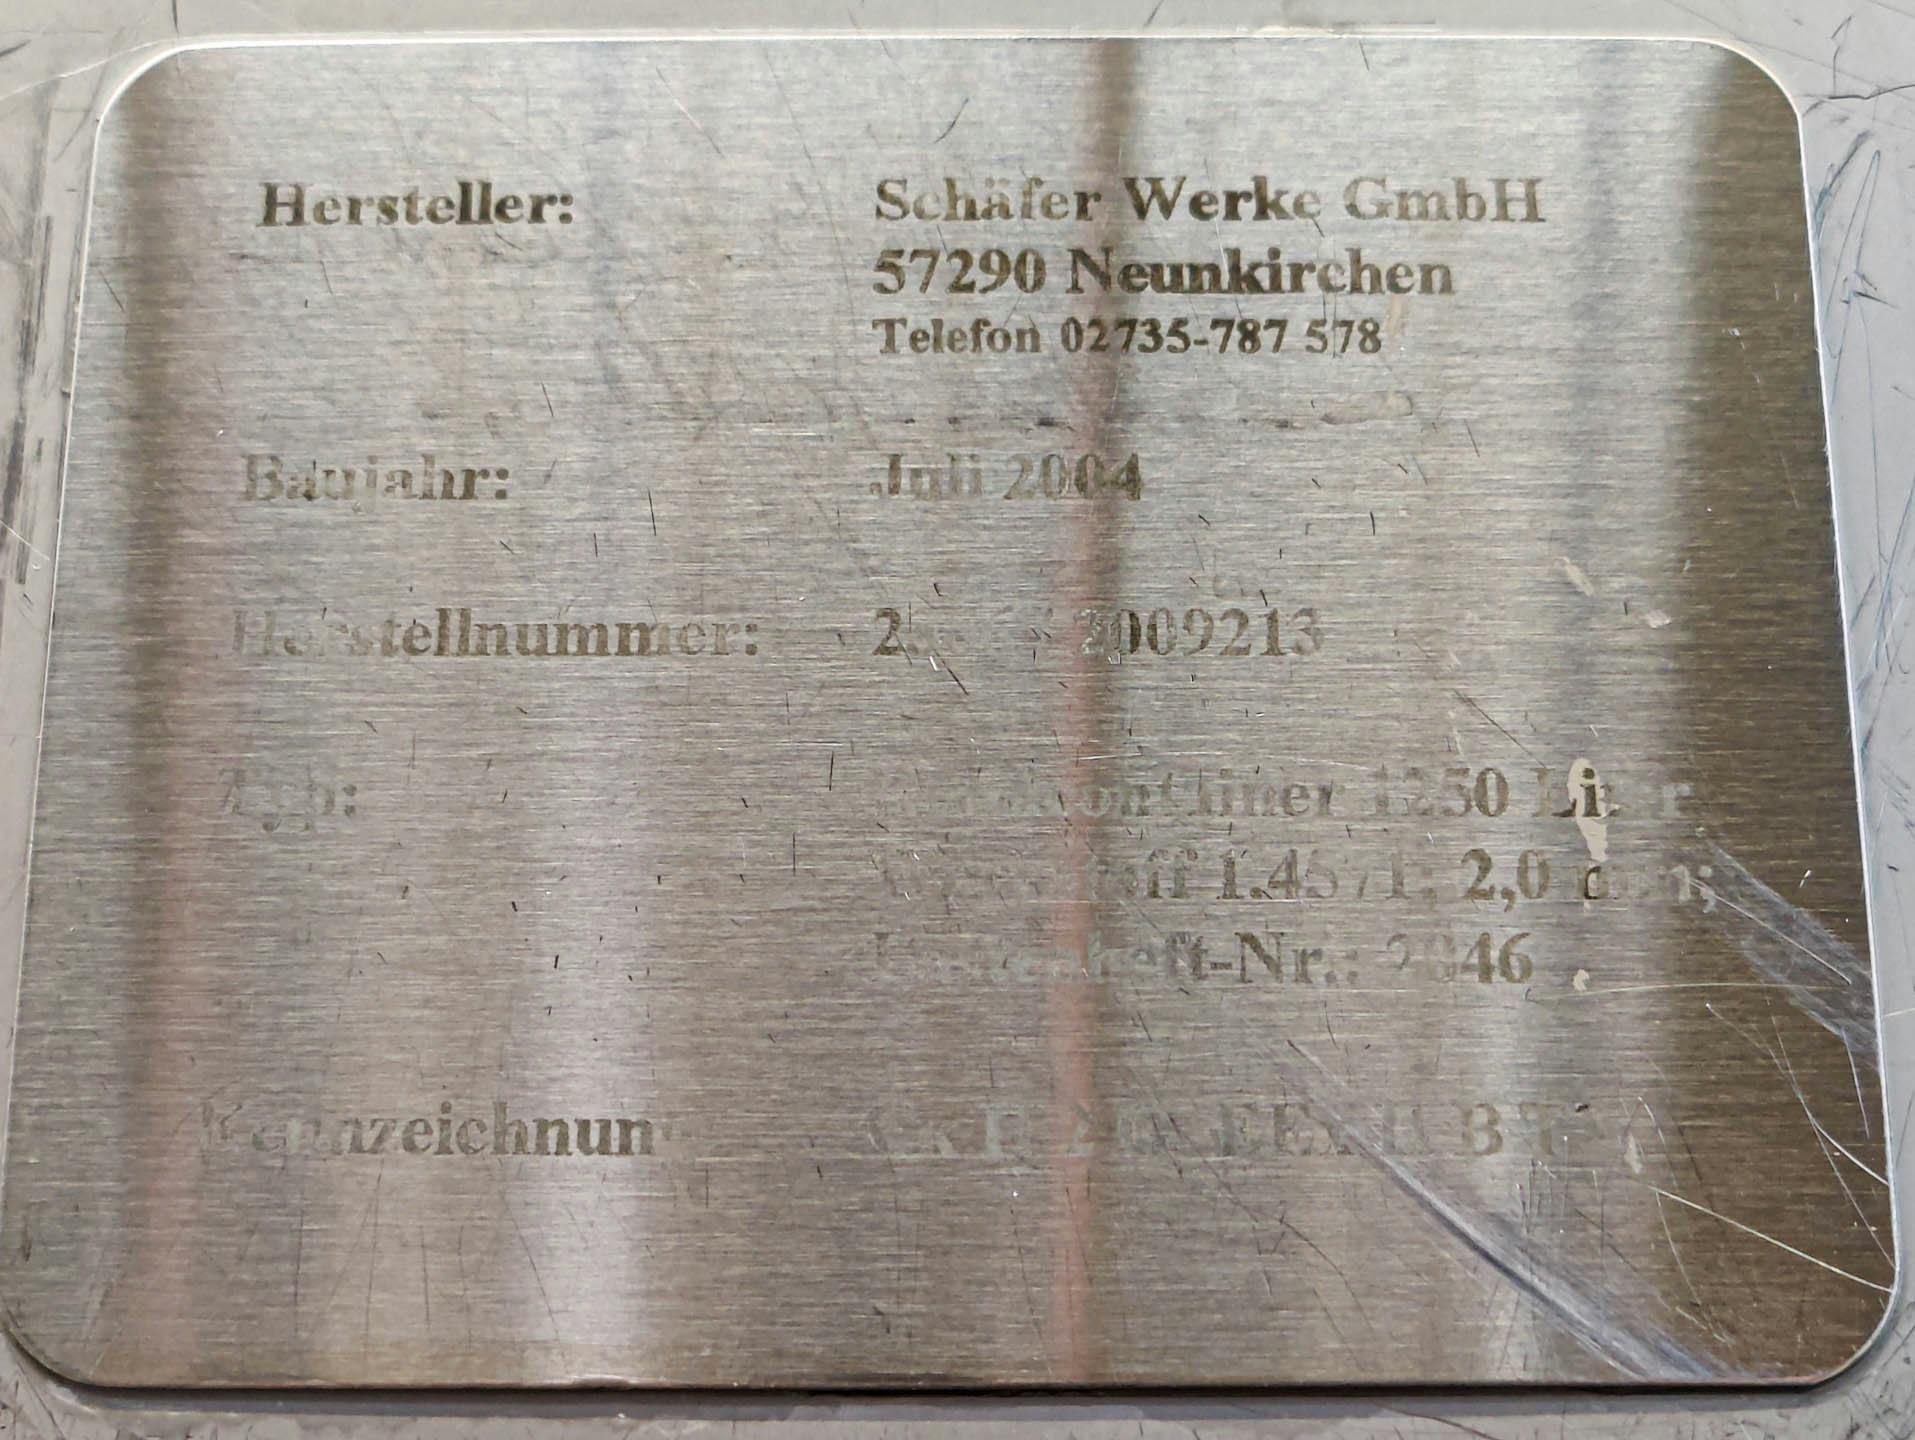 Schäfer Werke GmbH - Zbiornik mieszalnikowy - image 6